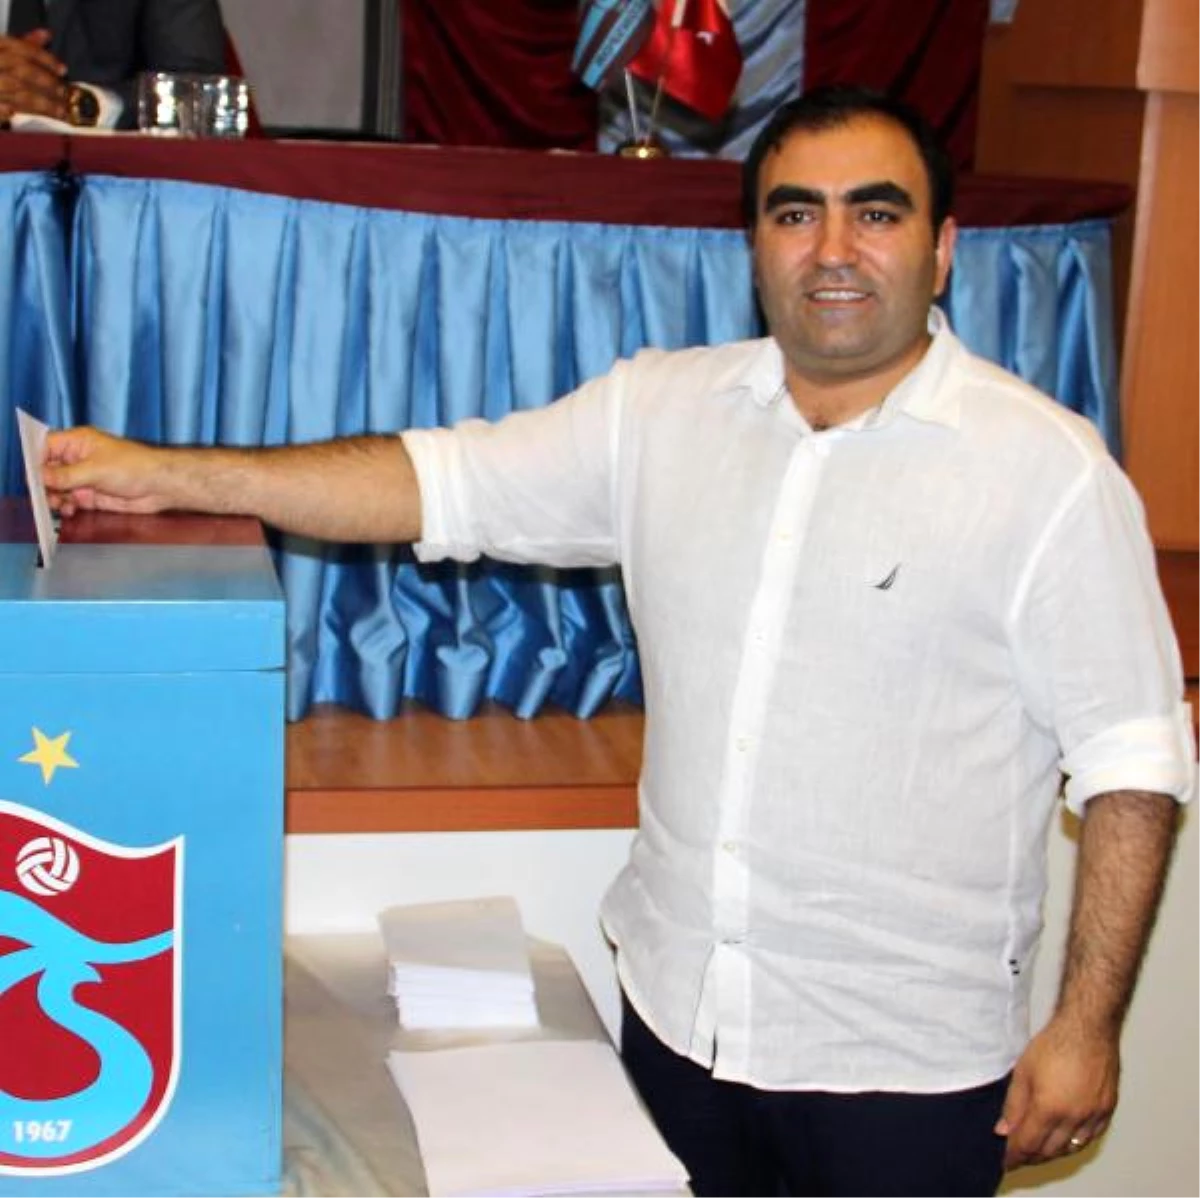 Trabzonspor Medical Park Başkanı Hopikoğlu: "Sporcusuna Borcu Olmayan Tek Kulübüz"